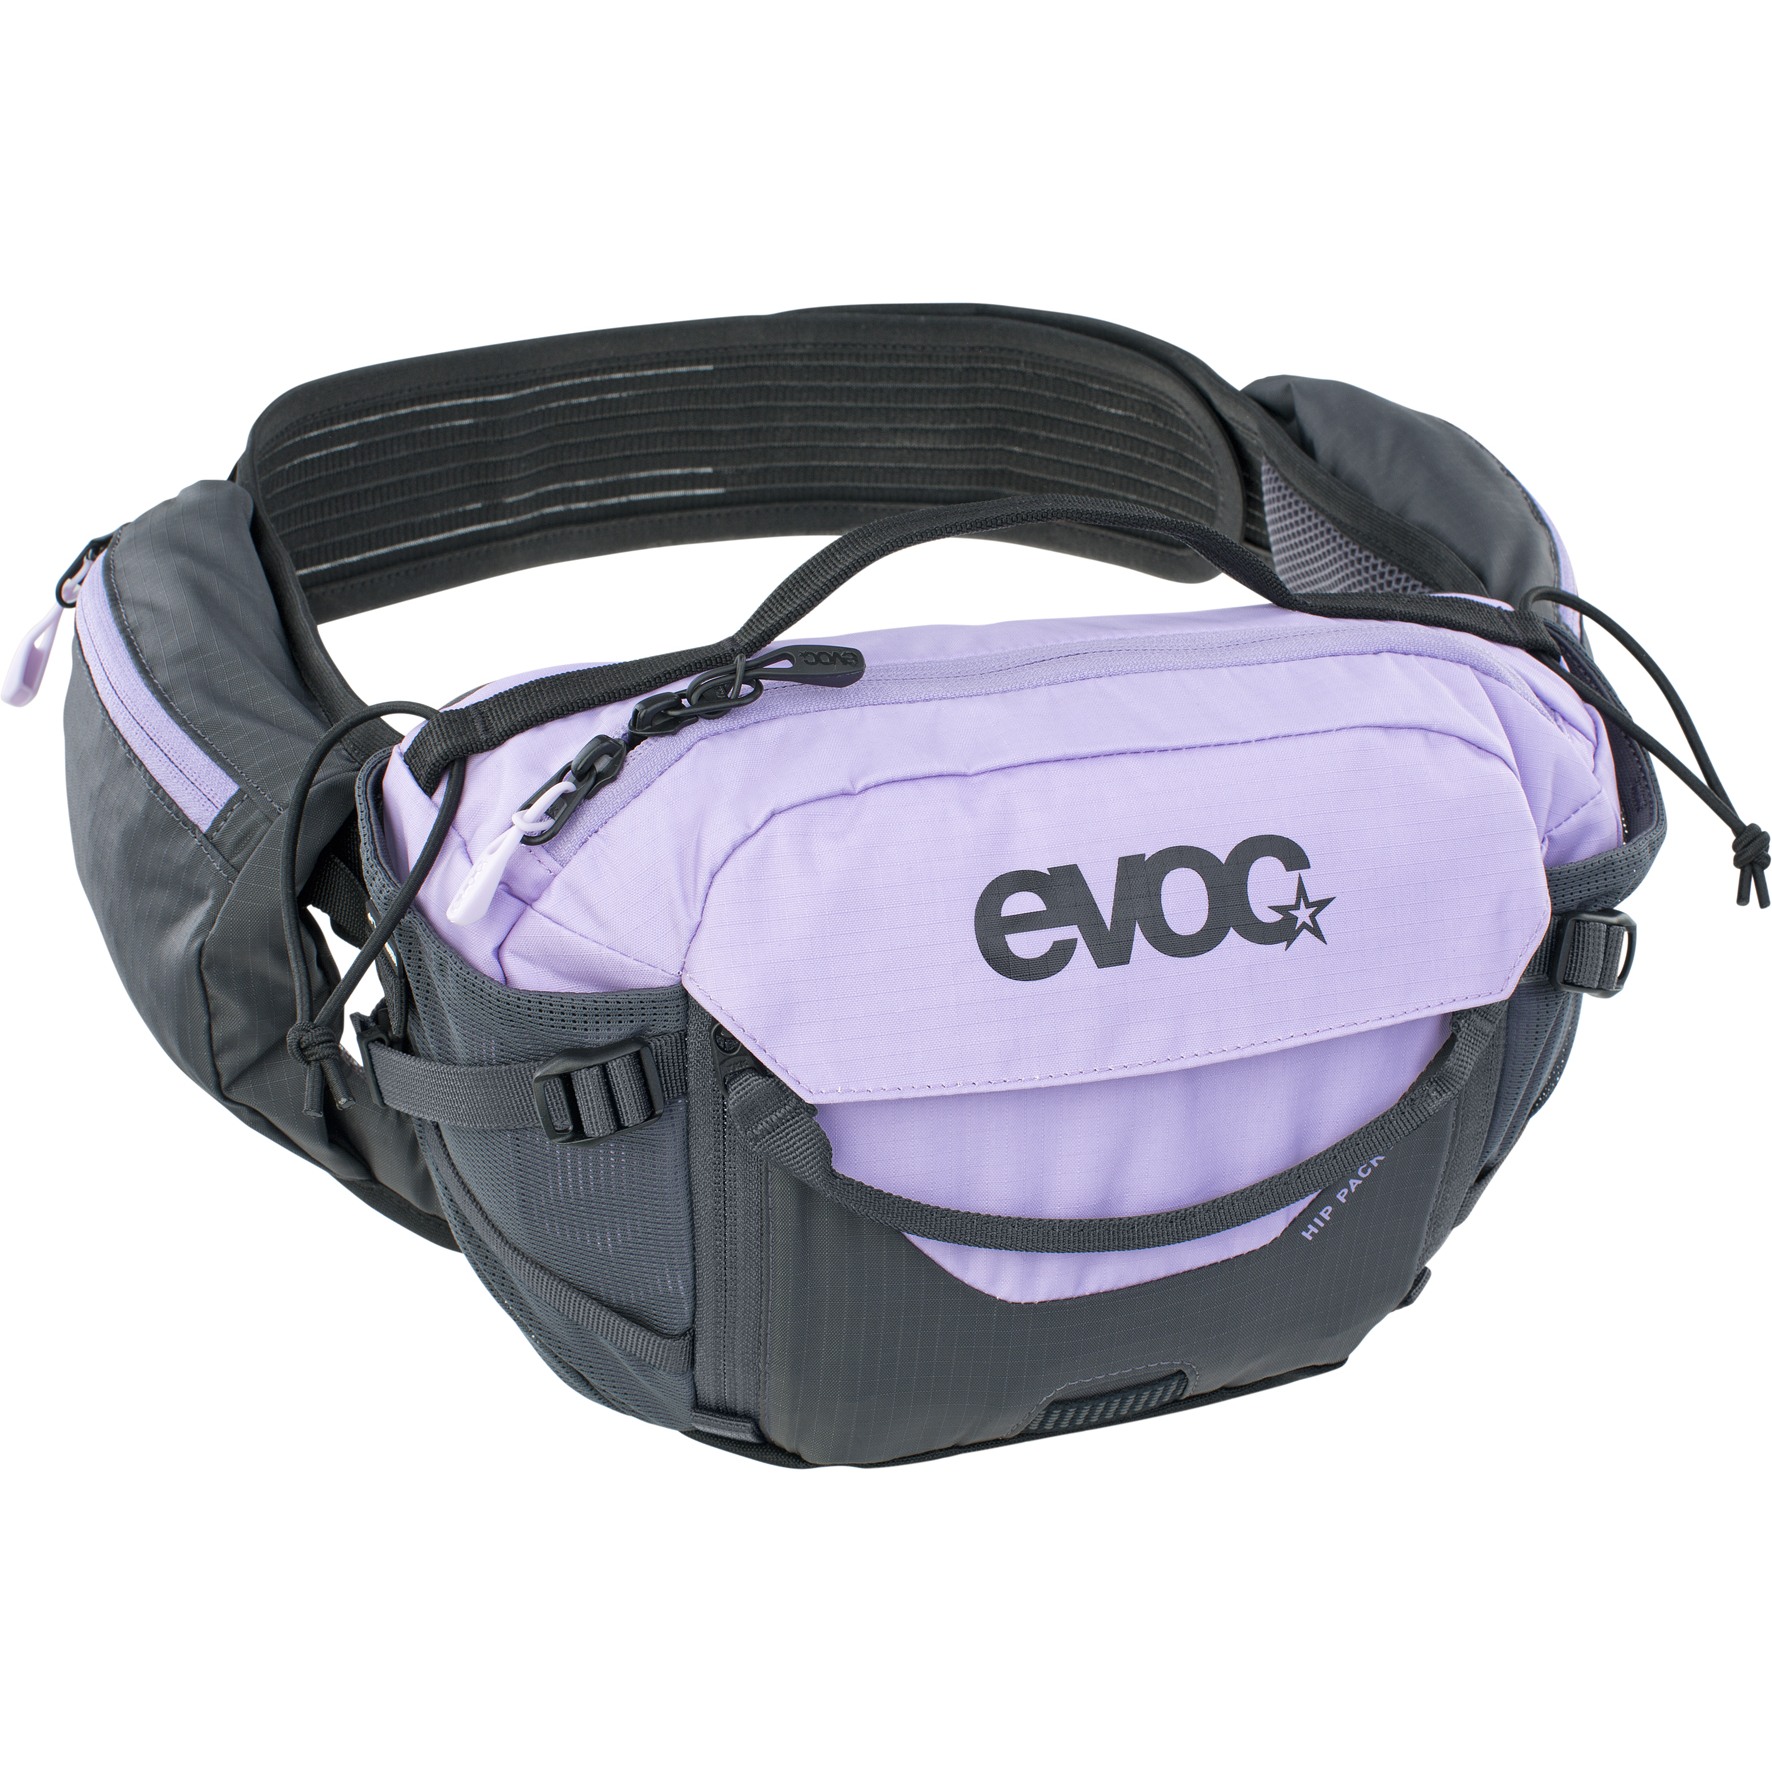 Produktbild von EVOC Hip Pack Pro 3 L Hüfttasche + 1.5 L Trinkblase - Multicolour